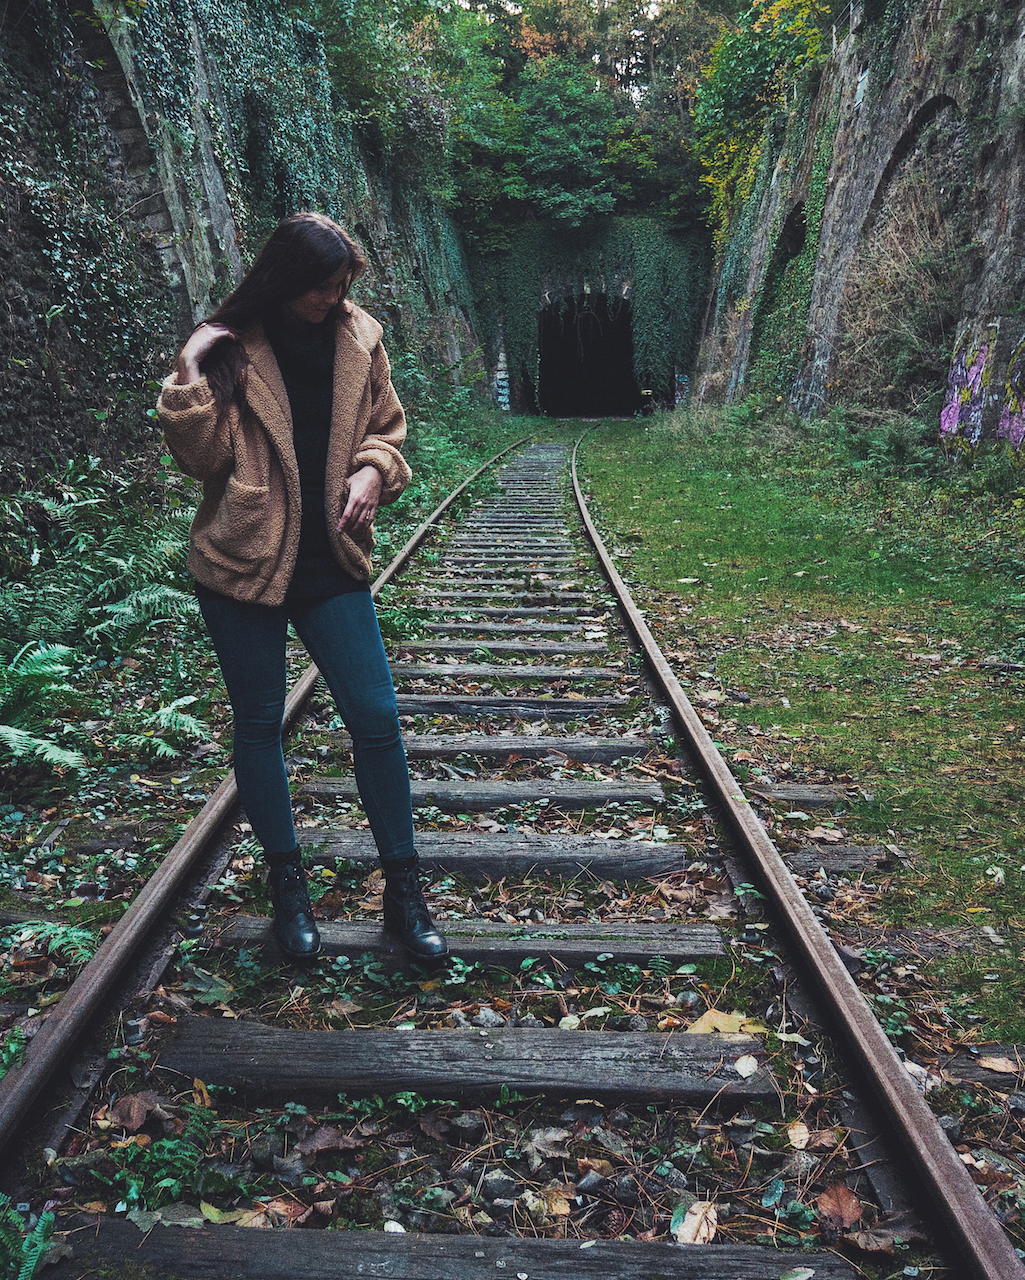 La petite ceinture, une voie ferrée abandonnée dans le 14e arrondissement - Paris - France